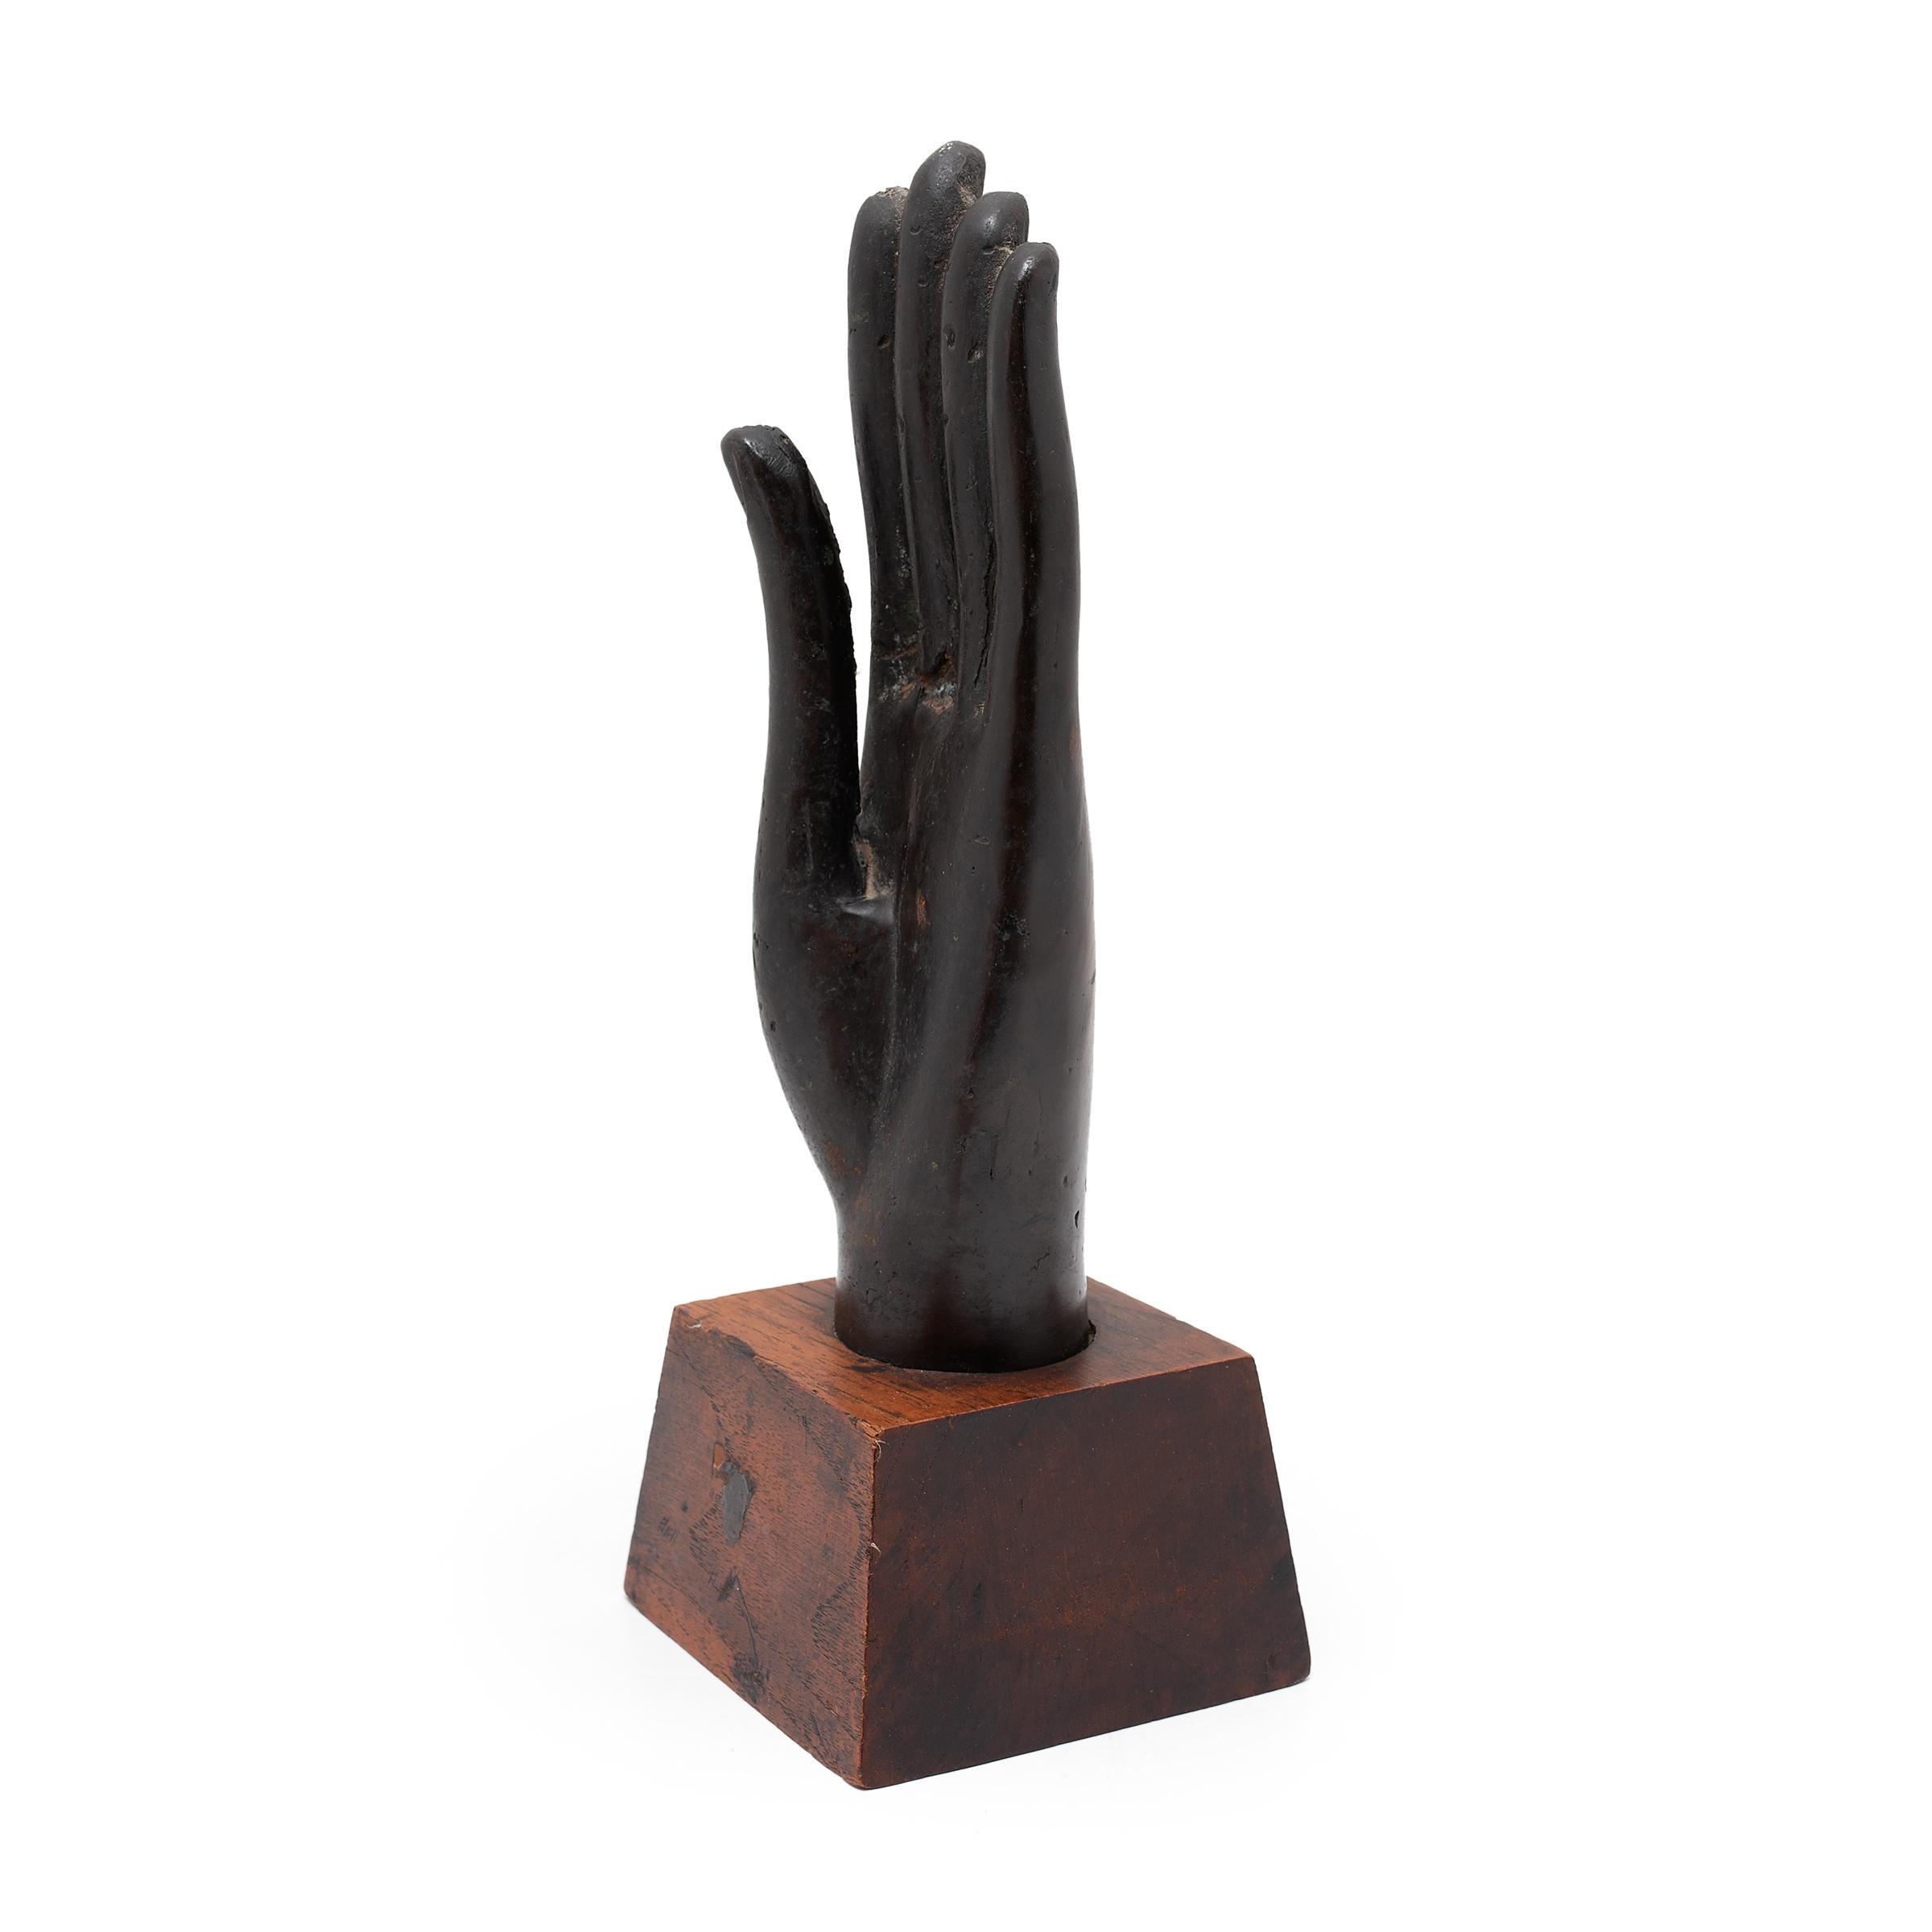 Diese Buddha-Hand-Skulptur aus Thailand aus dem 19. Jahrhundert ist fein aus Bronze gegossen, mit lebensechten Zügen und einer schönen dunklen Patina. Die Hand wird in Abhaya Mudra, der Geste des Schutzes und der Beruhigung, nach oben gehalten. Mit